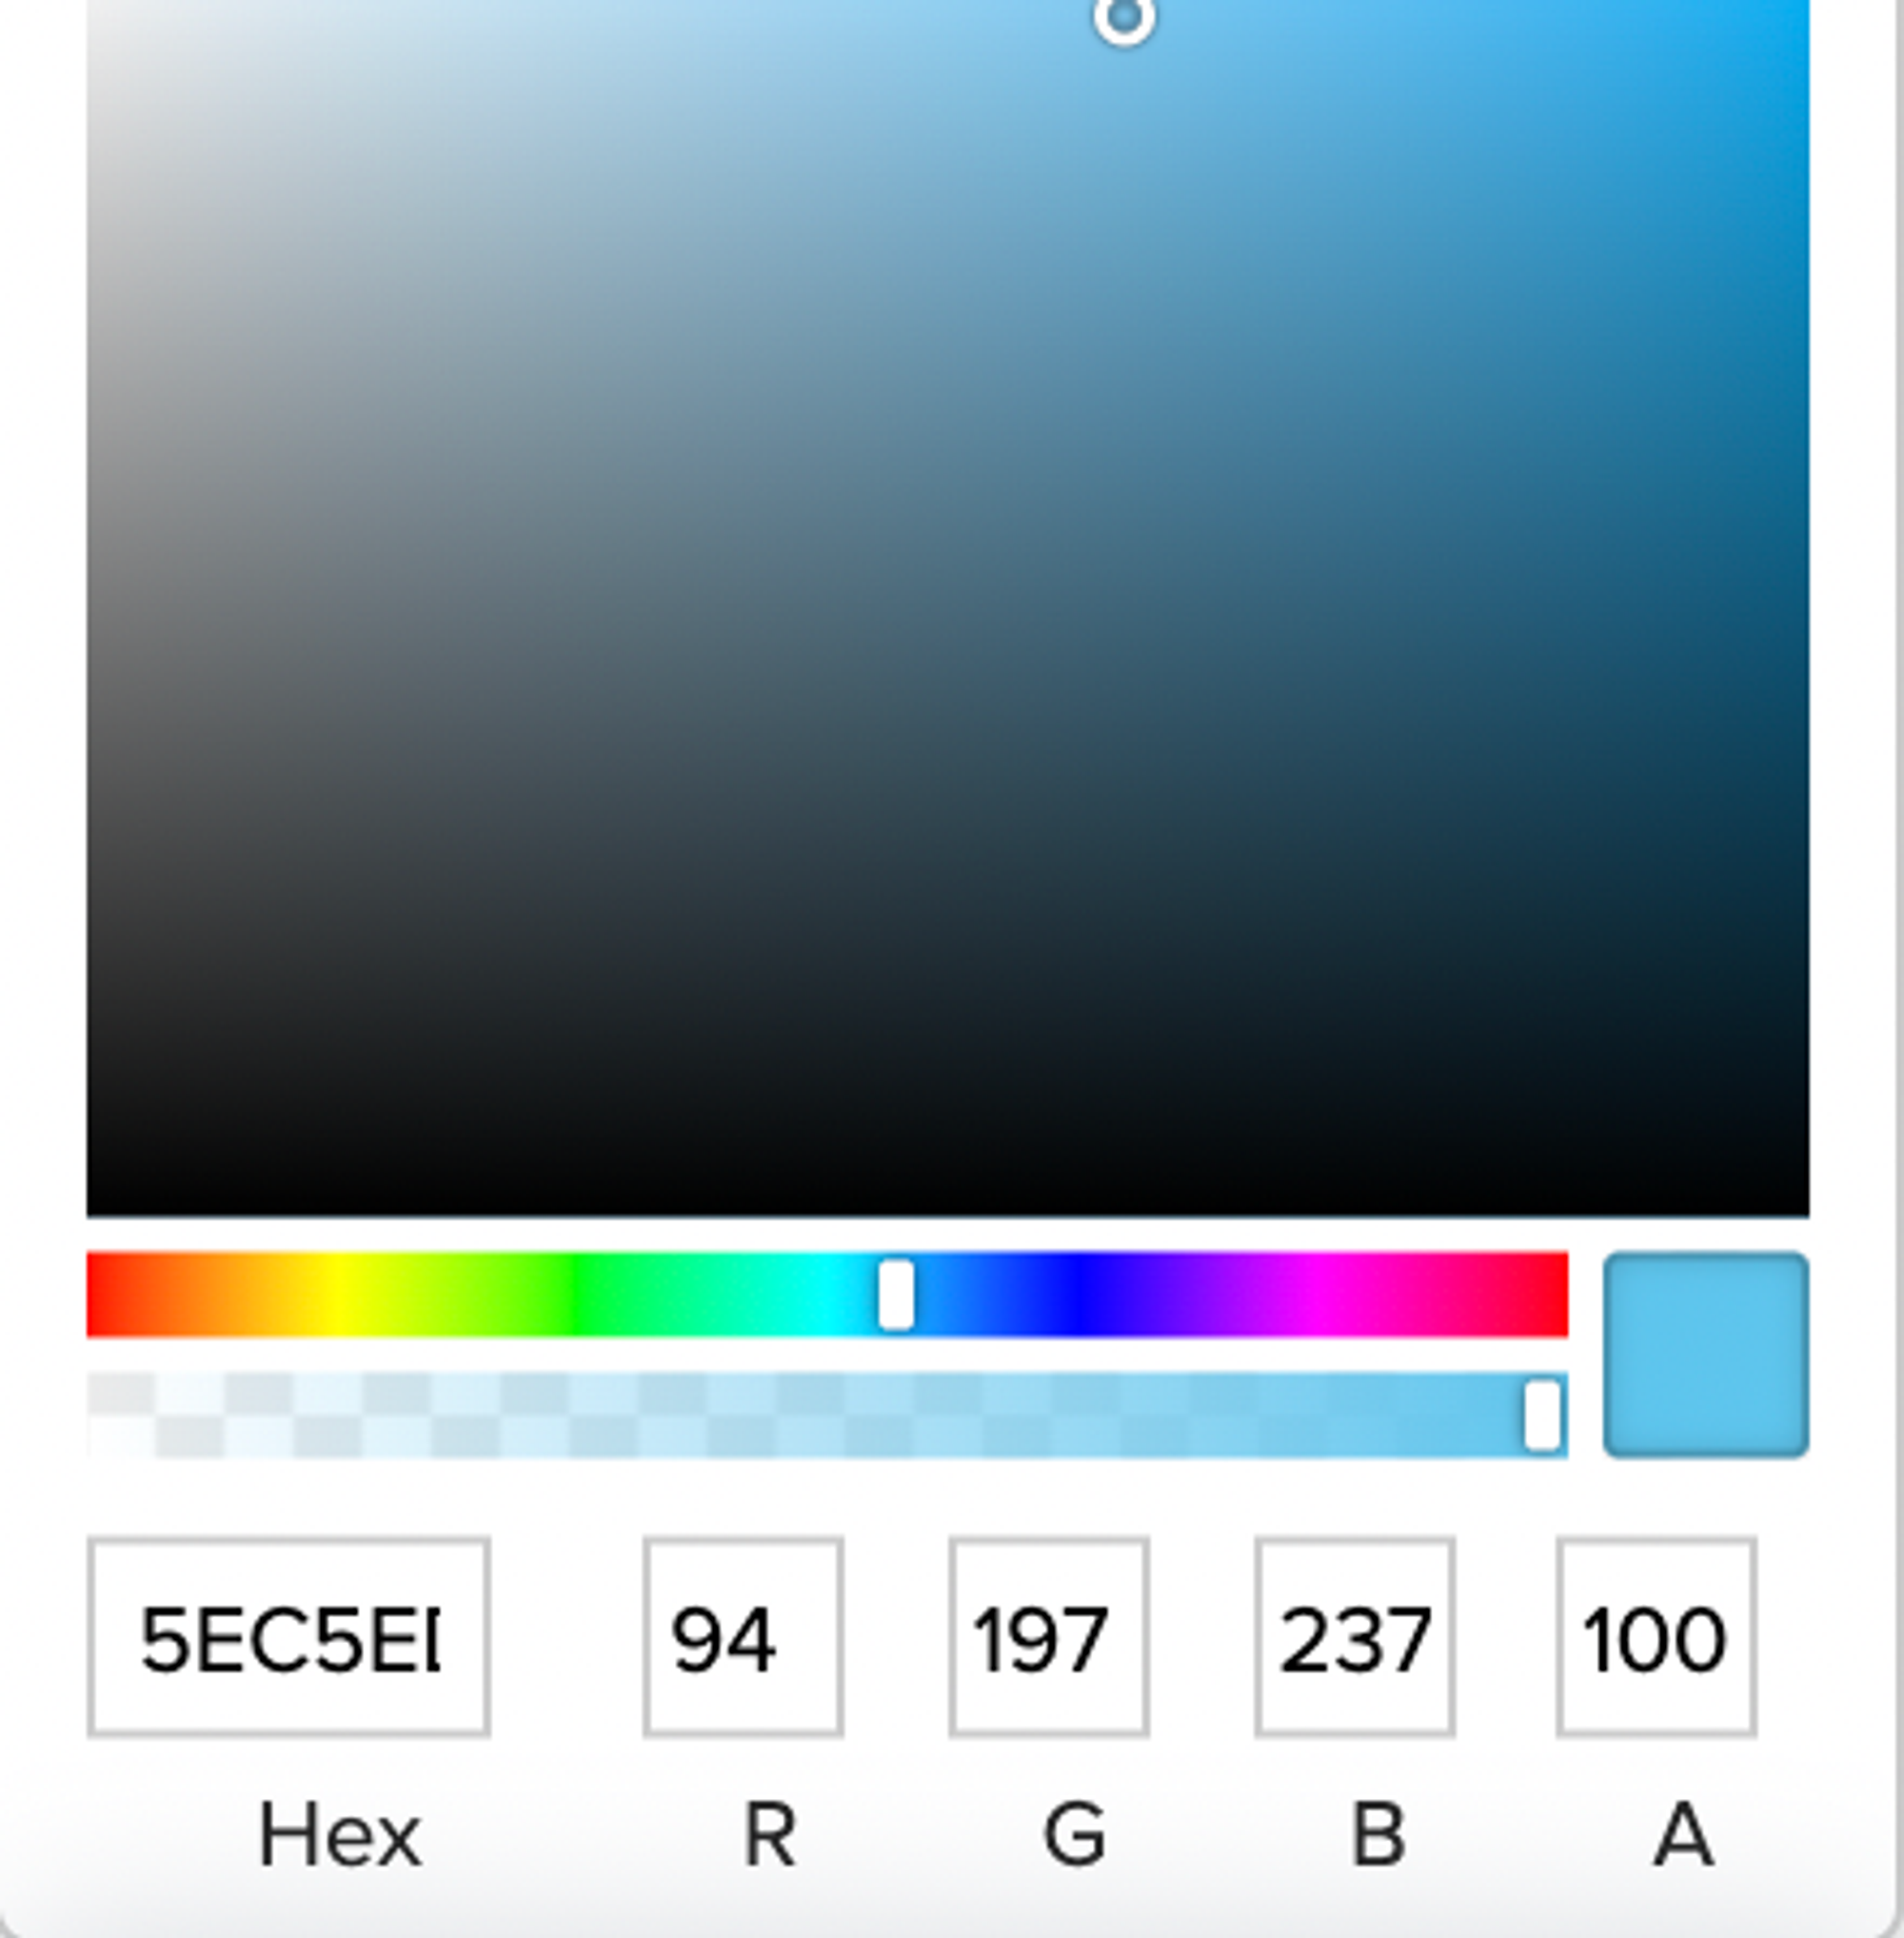 Par exemple, sur cette collectivité, le code hexadécimal de la couleur principale est 5EC5ED. 